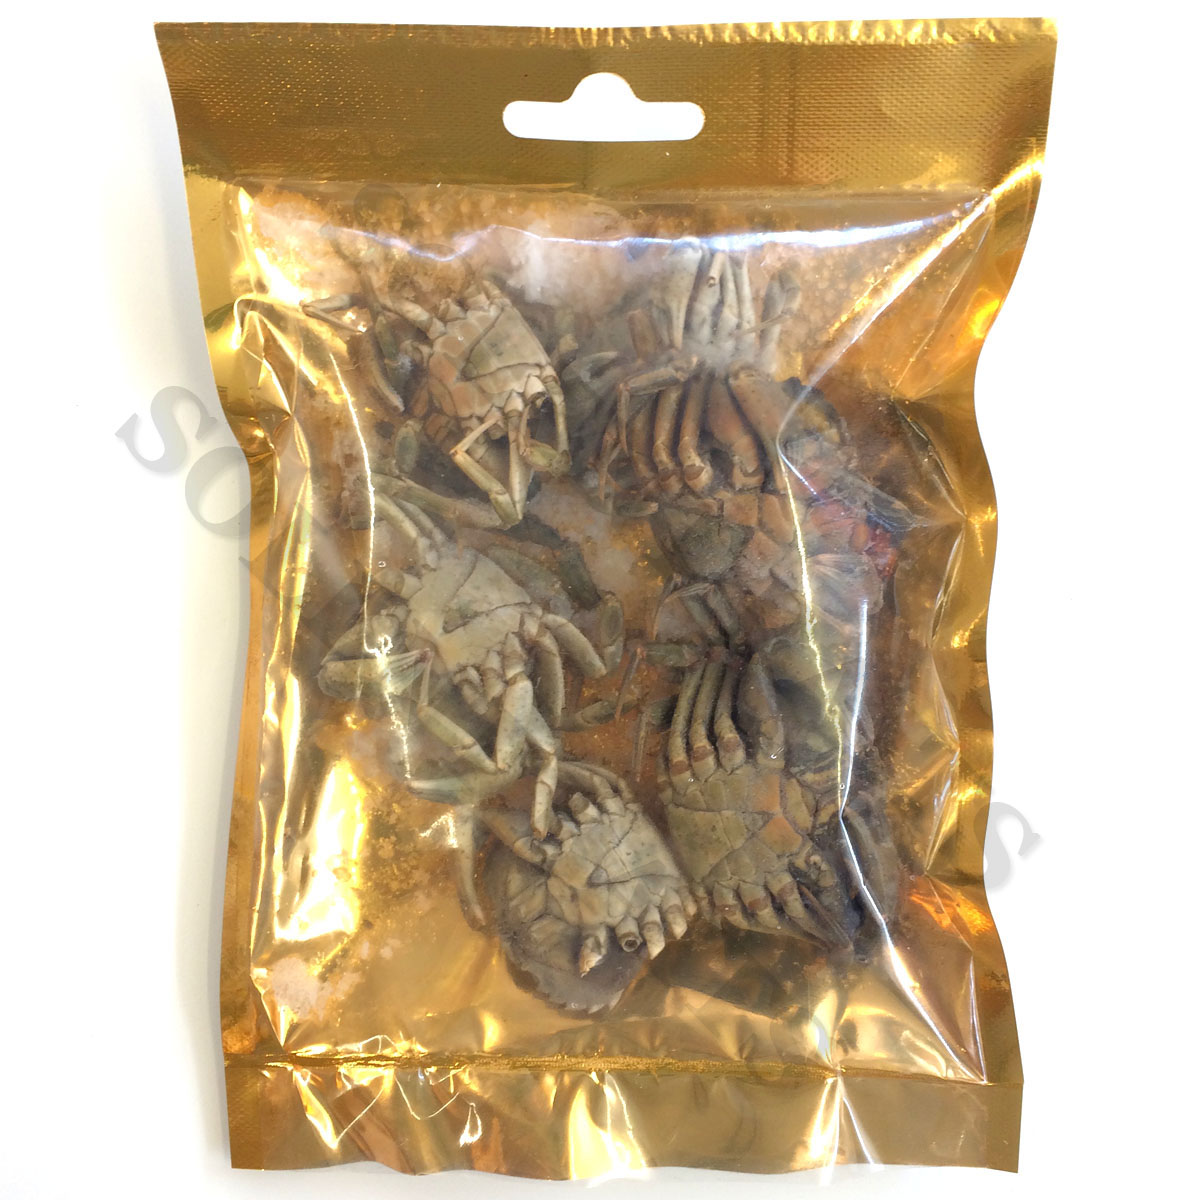 Solent Baits Frozen Peeler Crab Packs